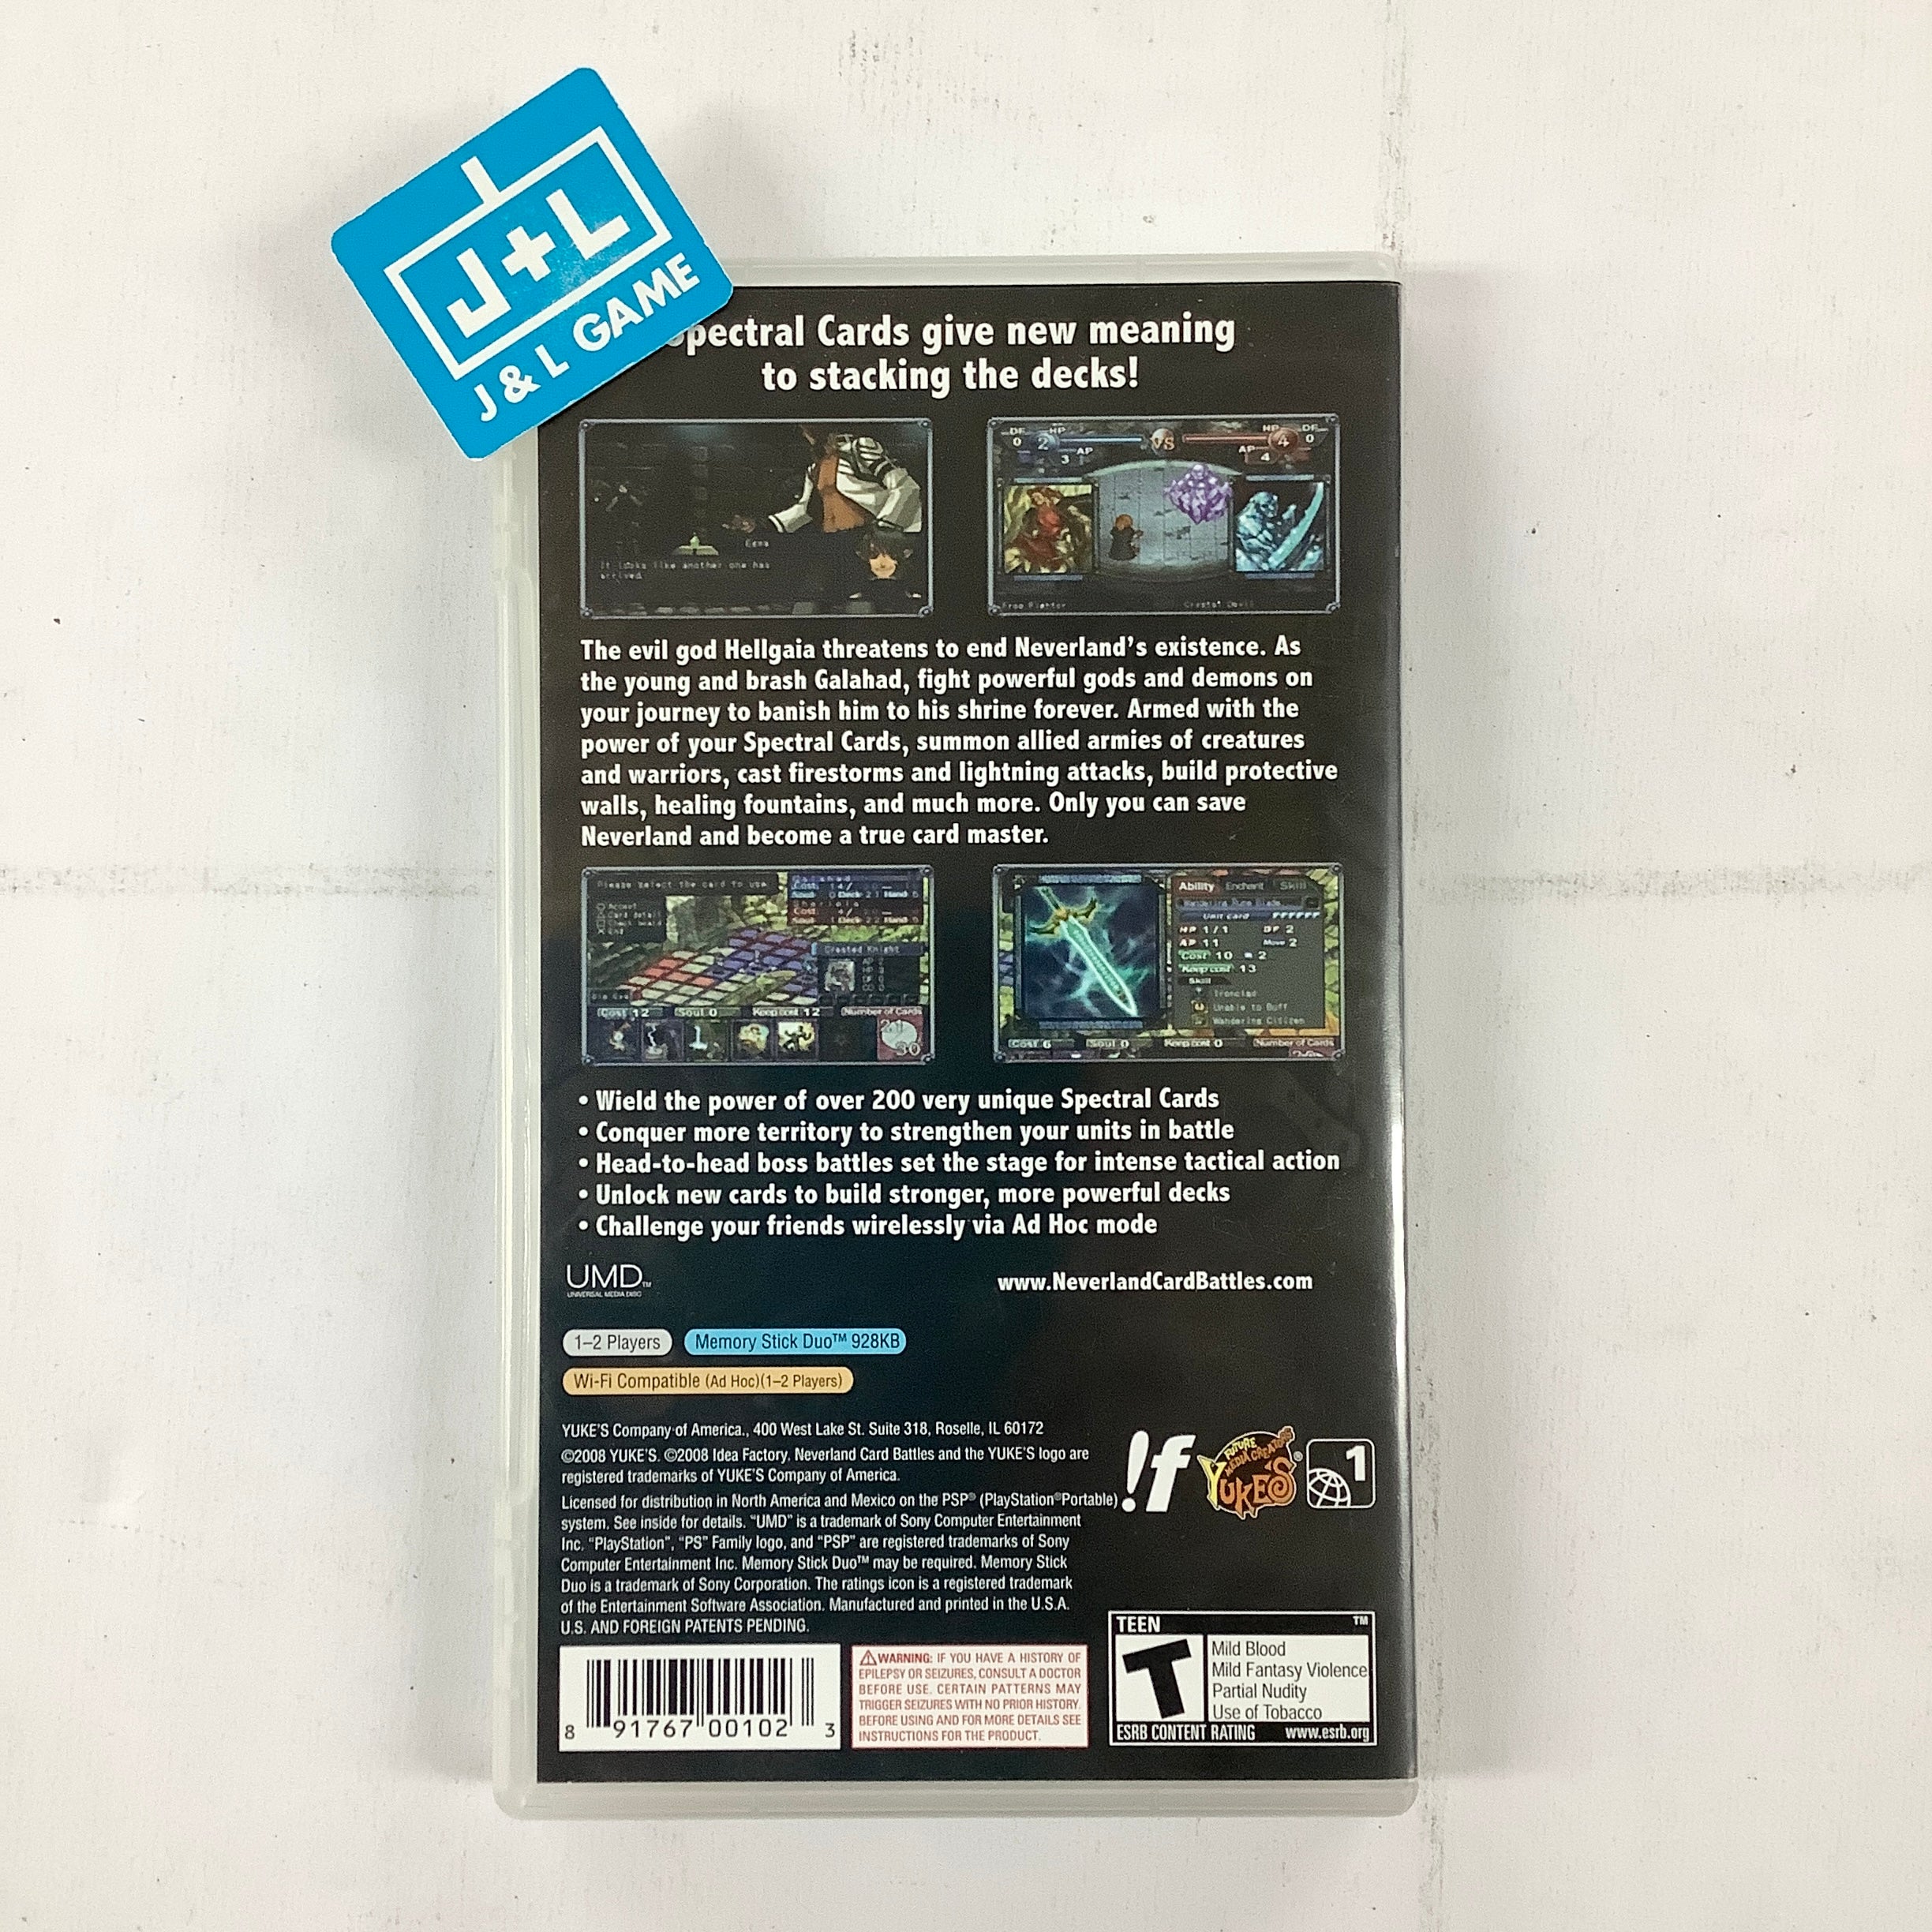 Neverland Card Battles - Sony PSP [Pre-Owned] Video Games Yuke's   